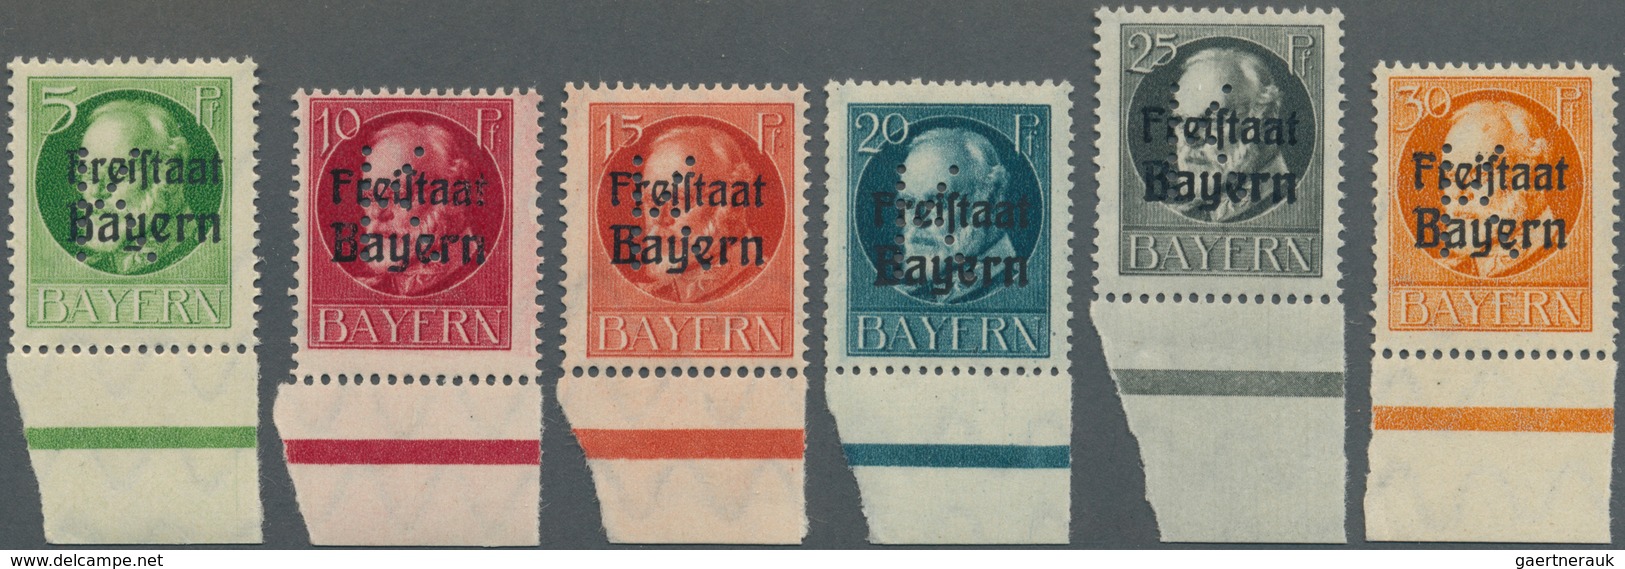 Bayern - Portofreiheitsmarken: 1919, 5 Pfg. Bis 30 Pfg. König Ludwig Mit Aufdruck Und Lochung "K", K - Other & Unclassified